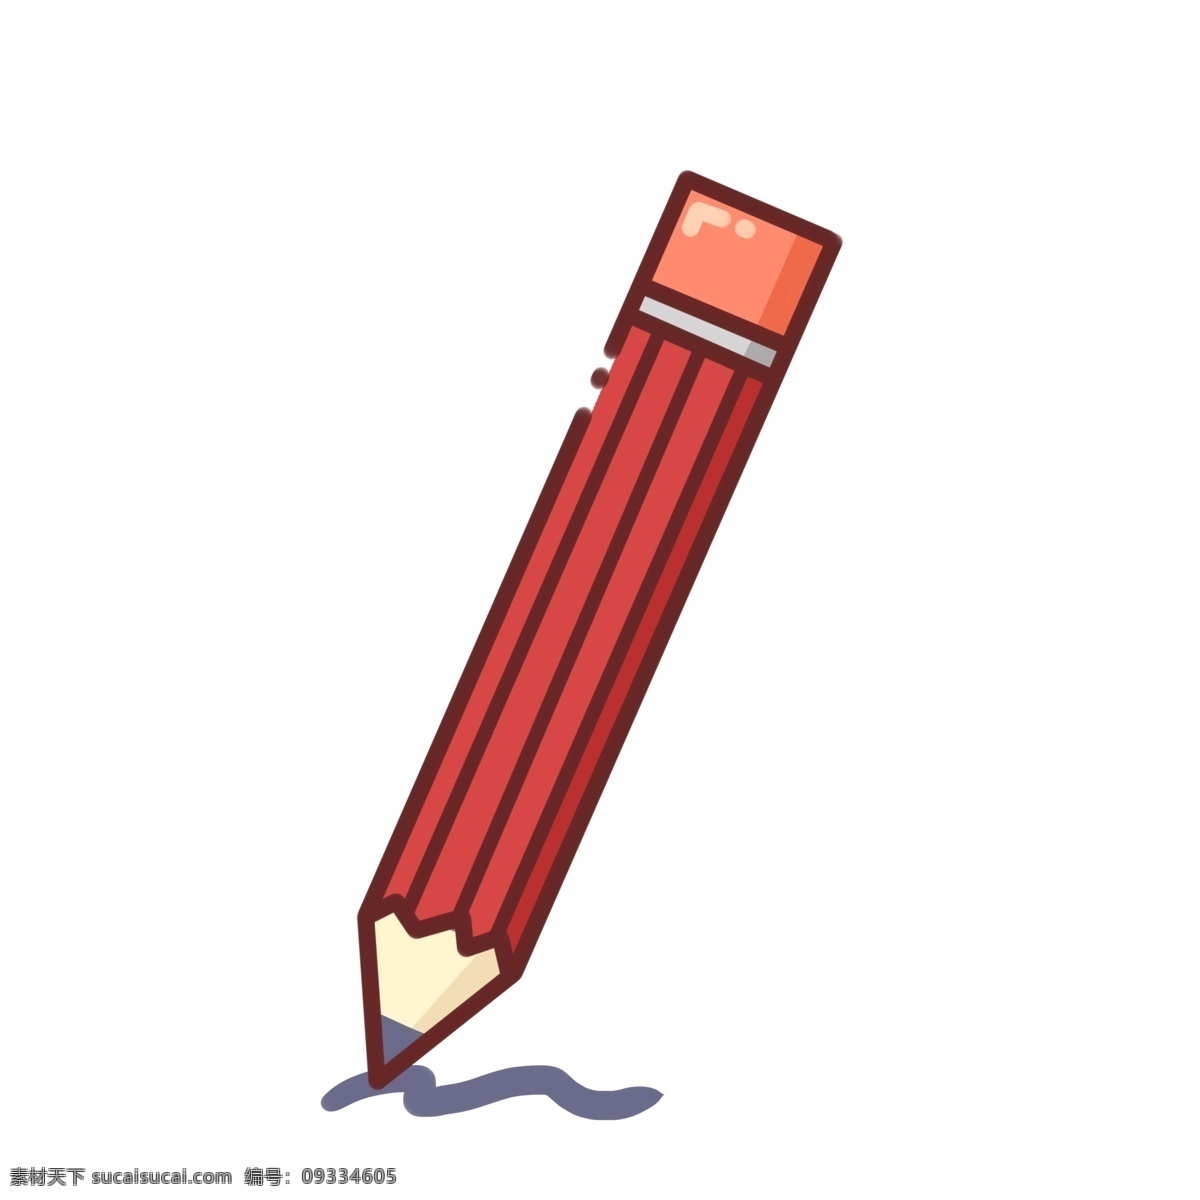 文具用品 图标 学习 手绘 铅笔 红色 免扣 文具 用品 元素